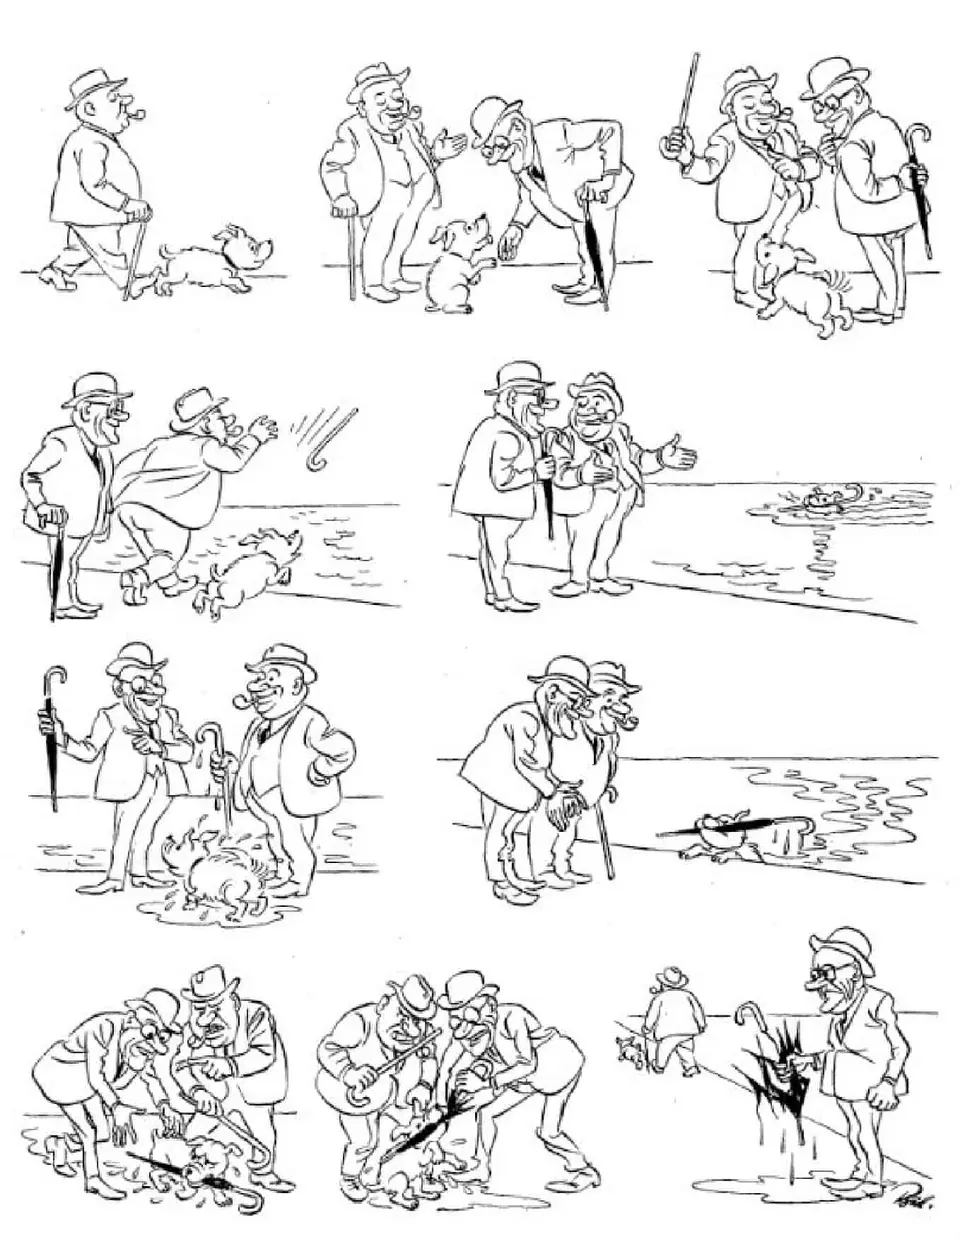 Карикатуры херлуфа бидструпа